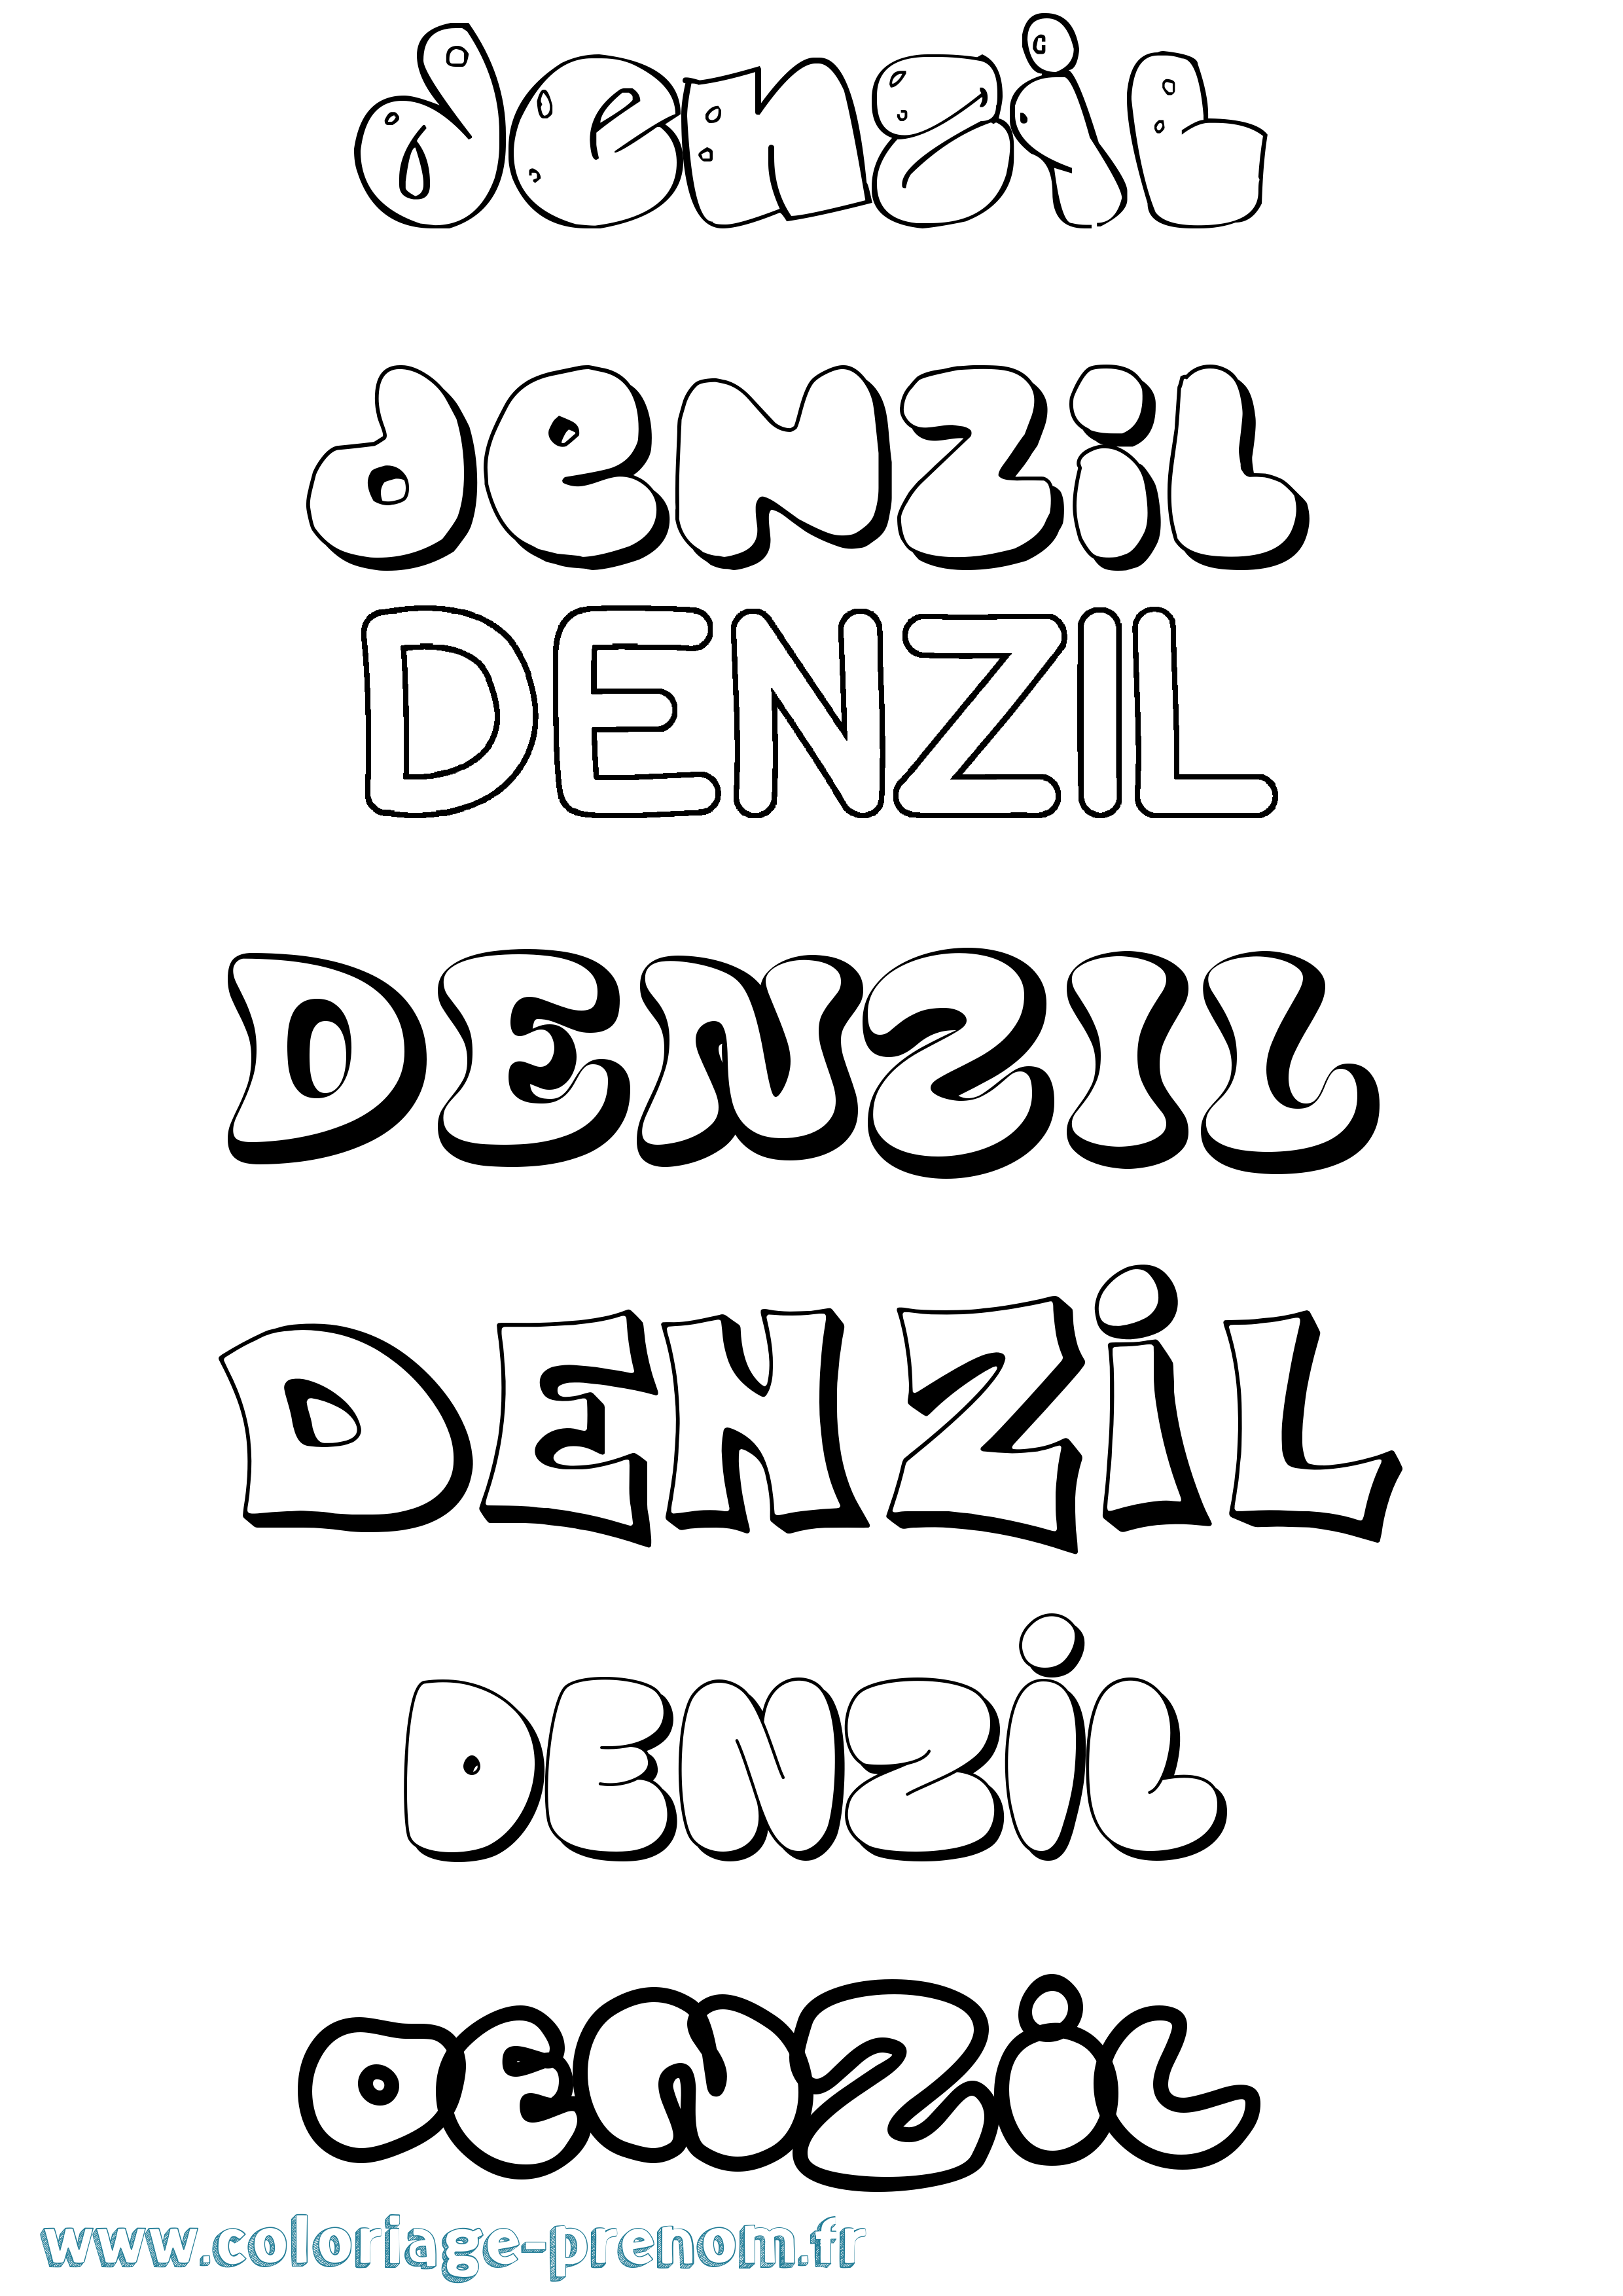 Coloriage prénom Denzil Bubble